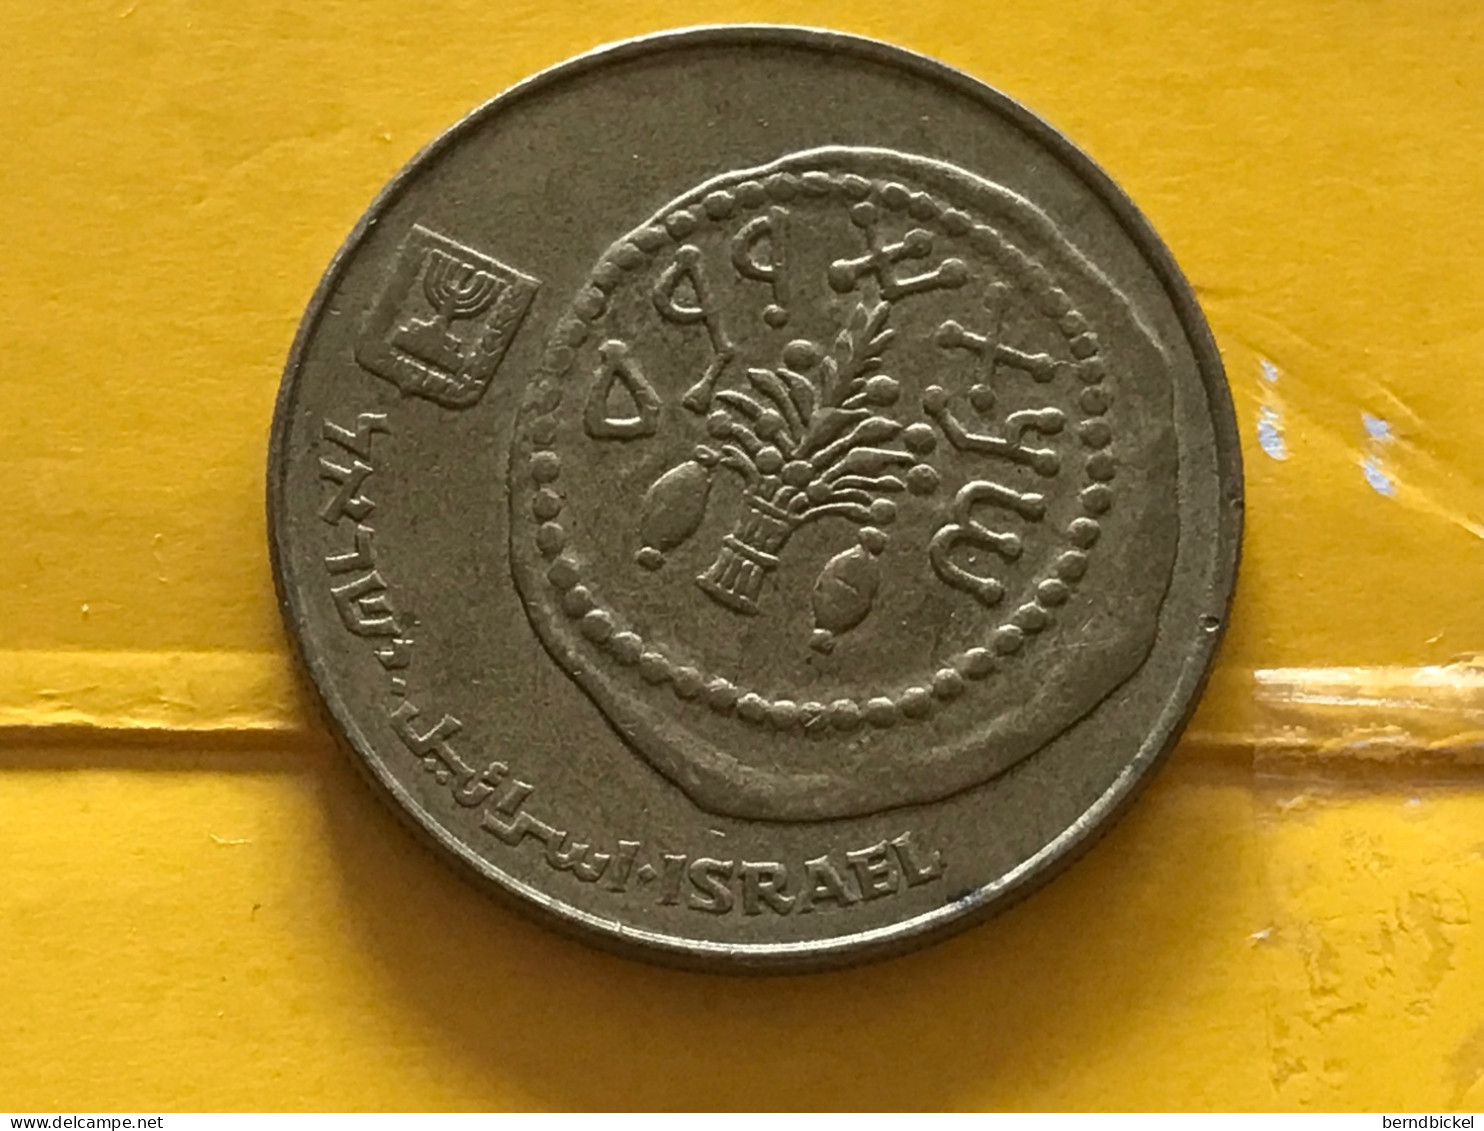 Münze Münzen Umlaufmünze Israel 50 Schekel 1984 - Israël